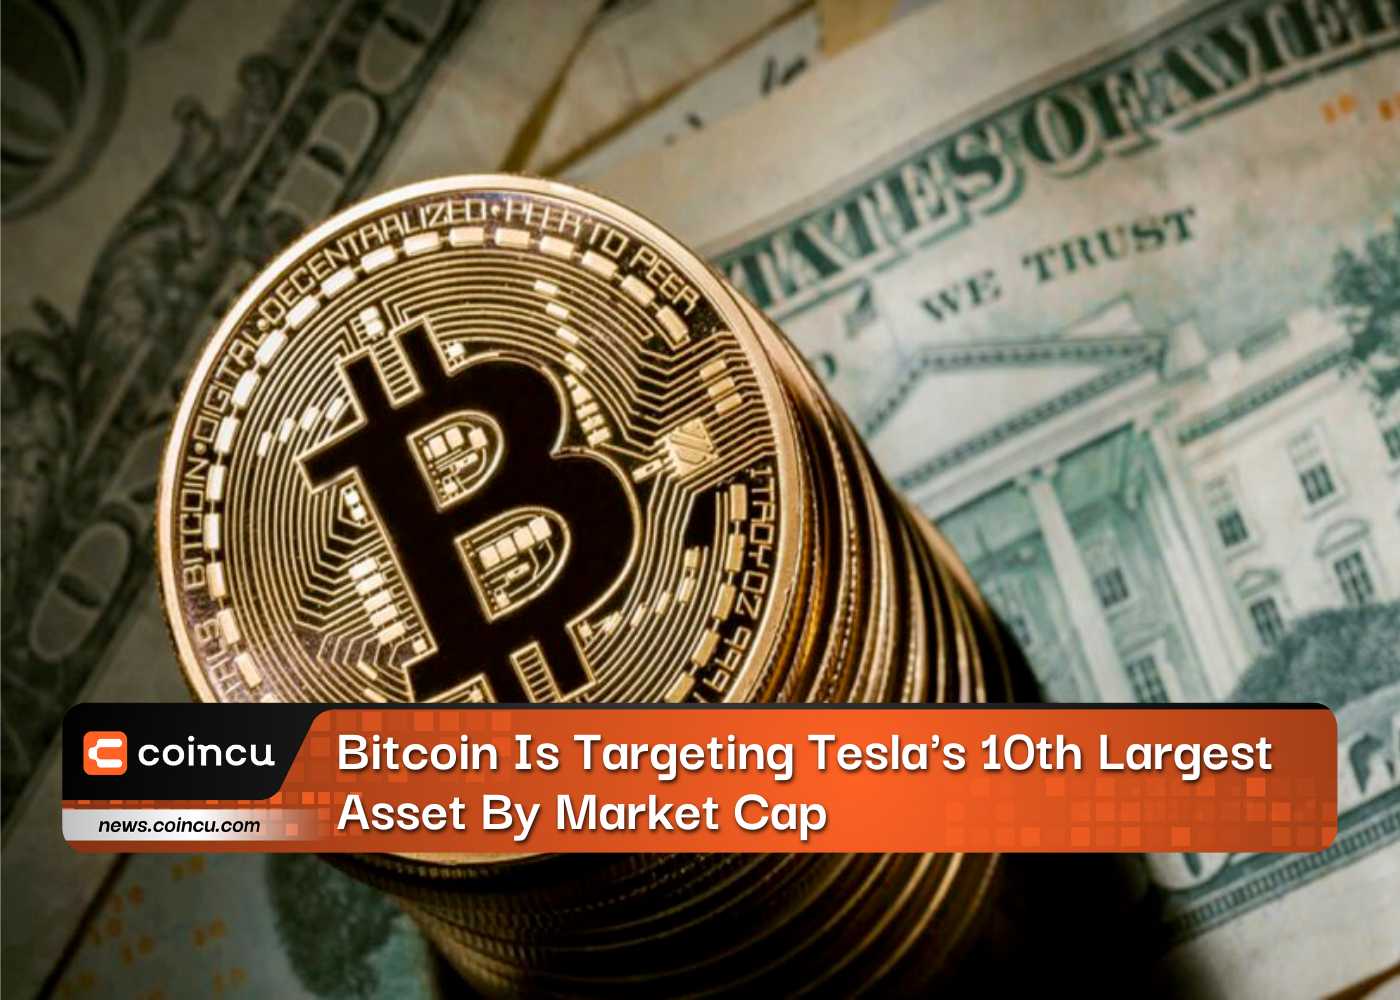 Bitcoin cible le 10ème actif de Tesla en termes de capitalisation boursière